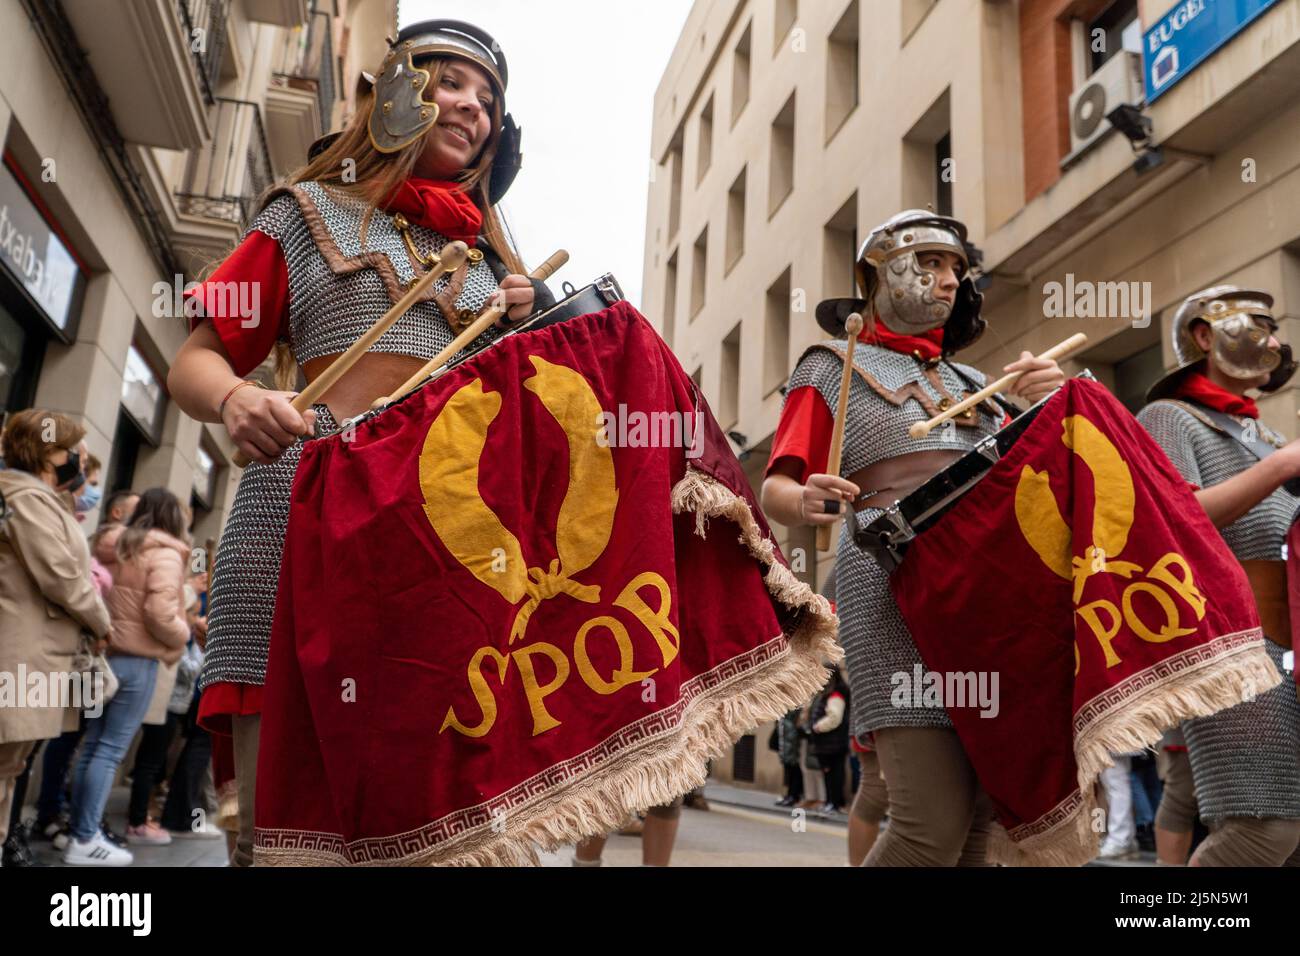 Calahorra, Spanien; 04102022: römische Soldaten in einer historischen Nachstellung zu ostern. Menschen, die eine römische Legion aufführen Stockfoto